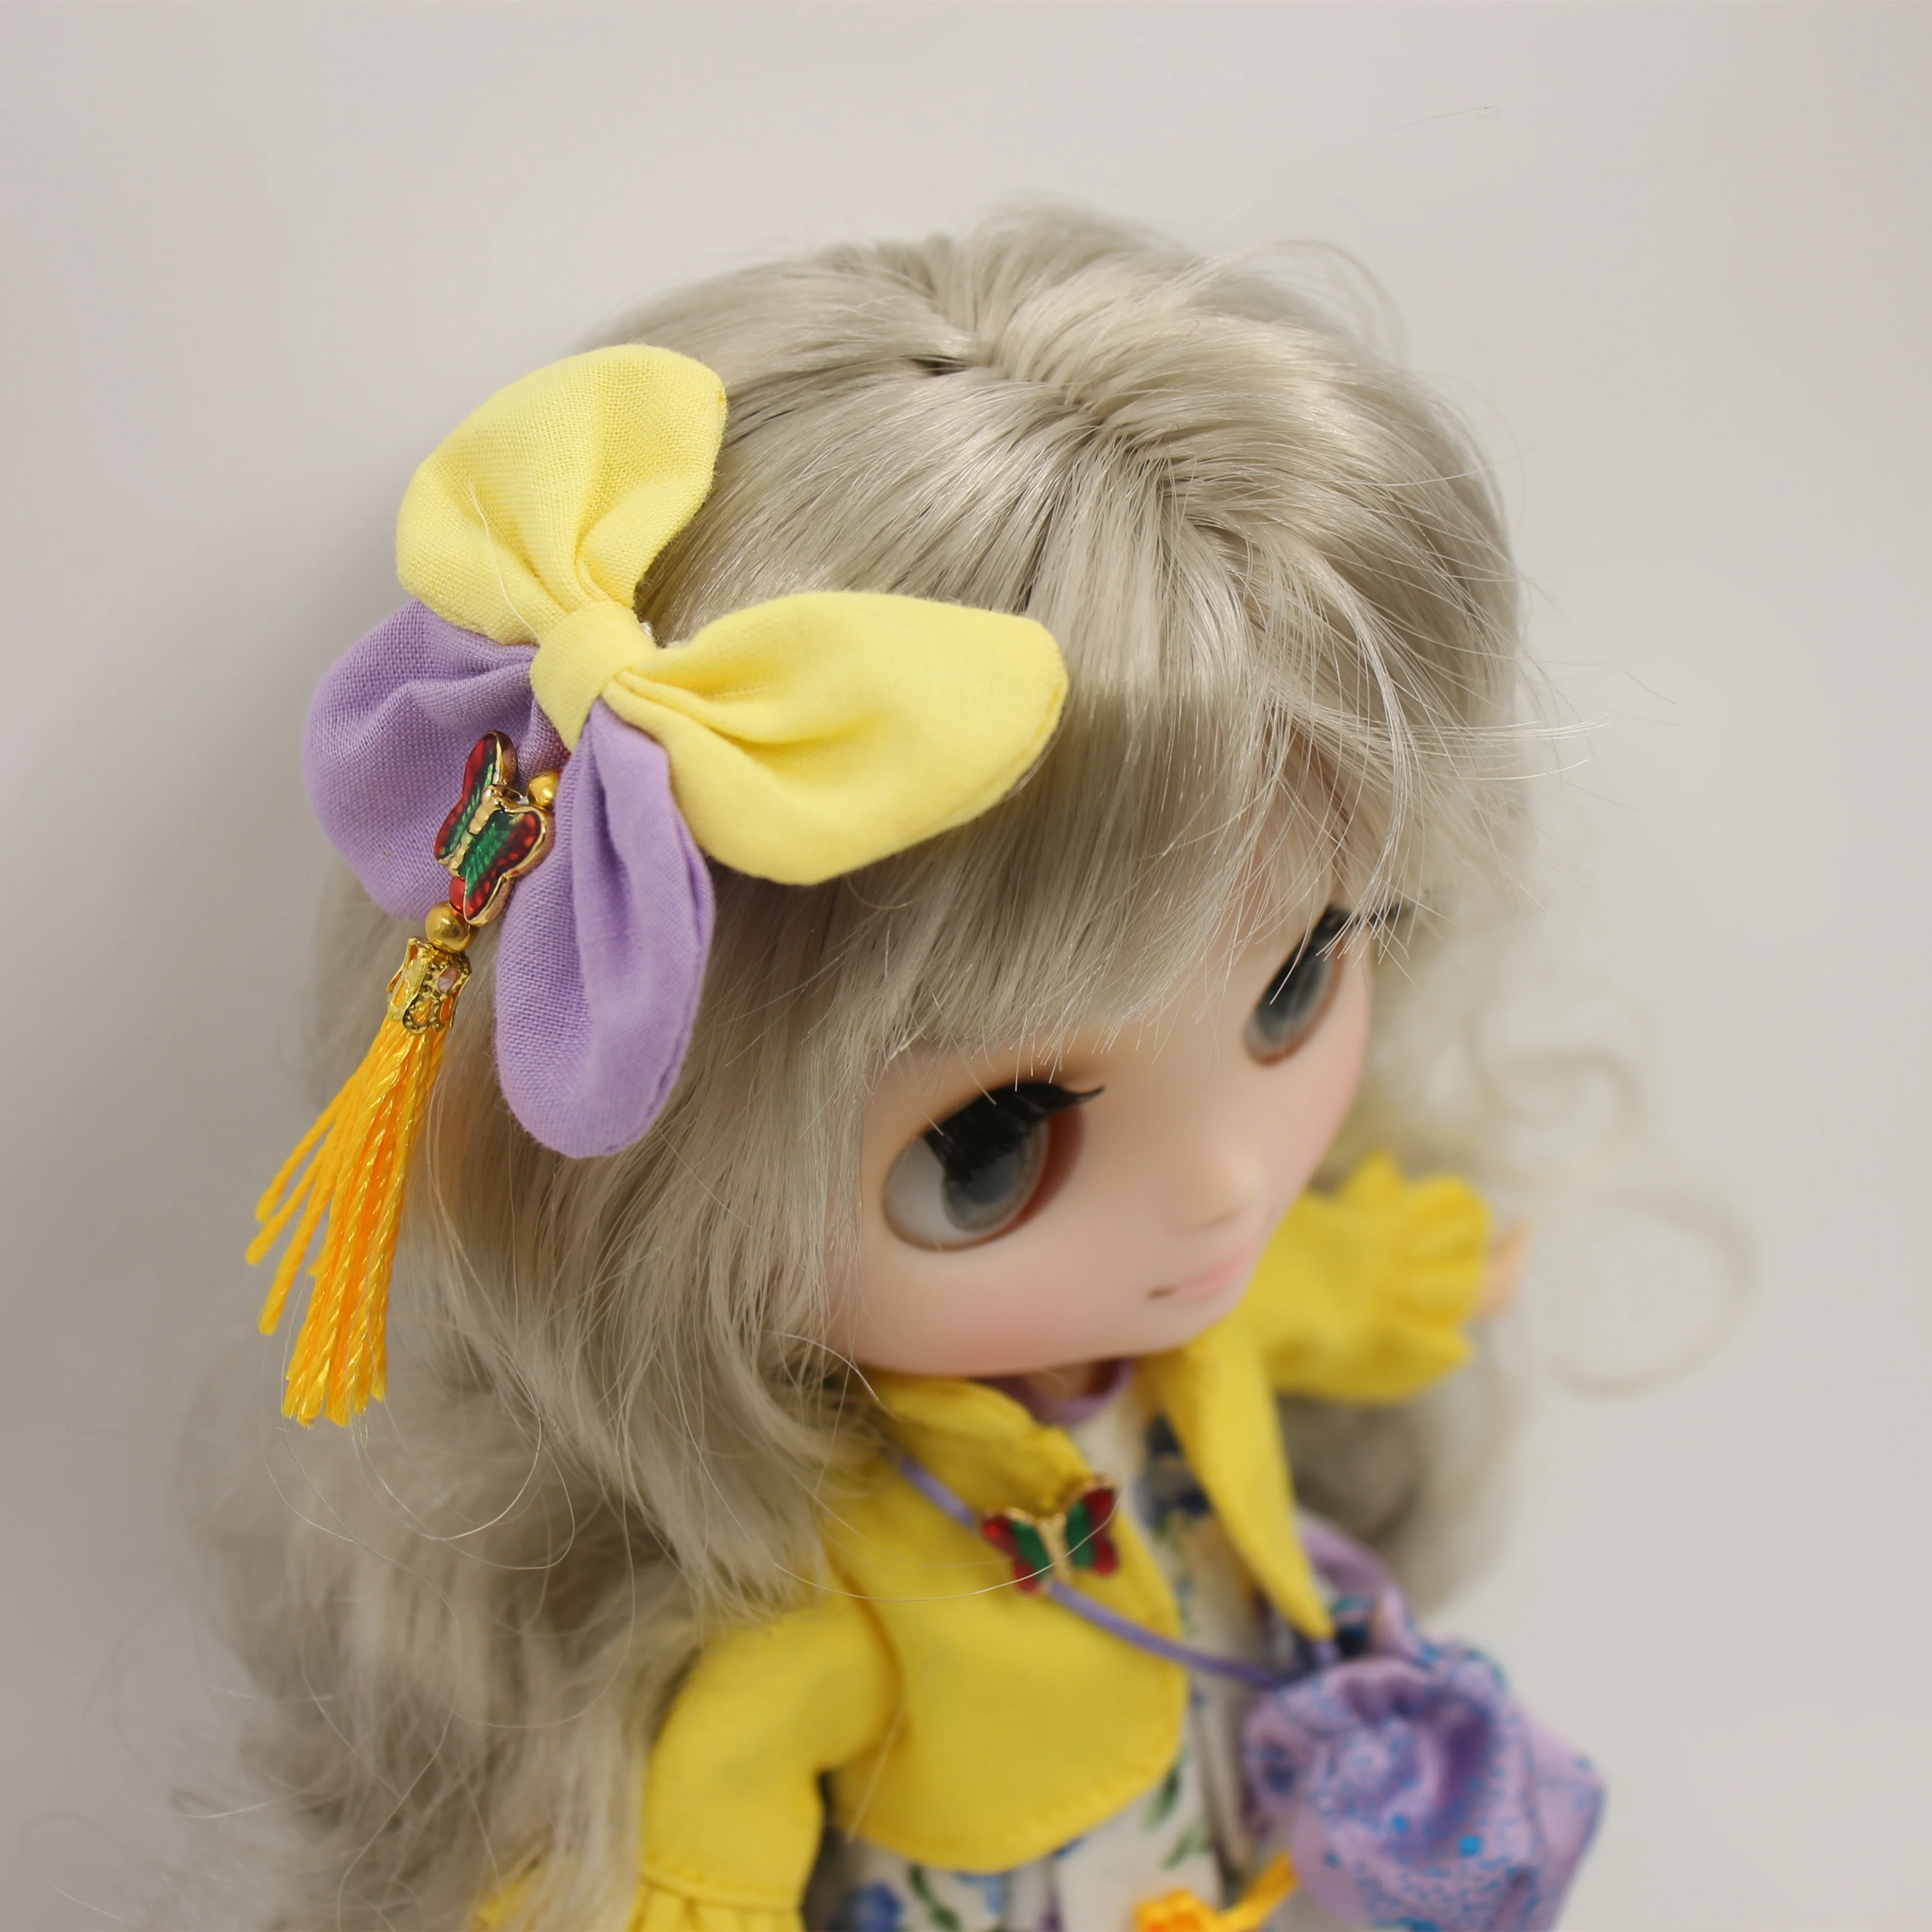 ICY DBS-Middie Doll, rosto brilhante personalizado, conjunto fosco ou completo, explodir cabelo e gesto de mão como presente, 20cm, Blyth